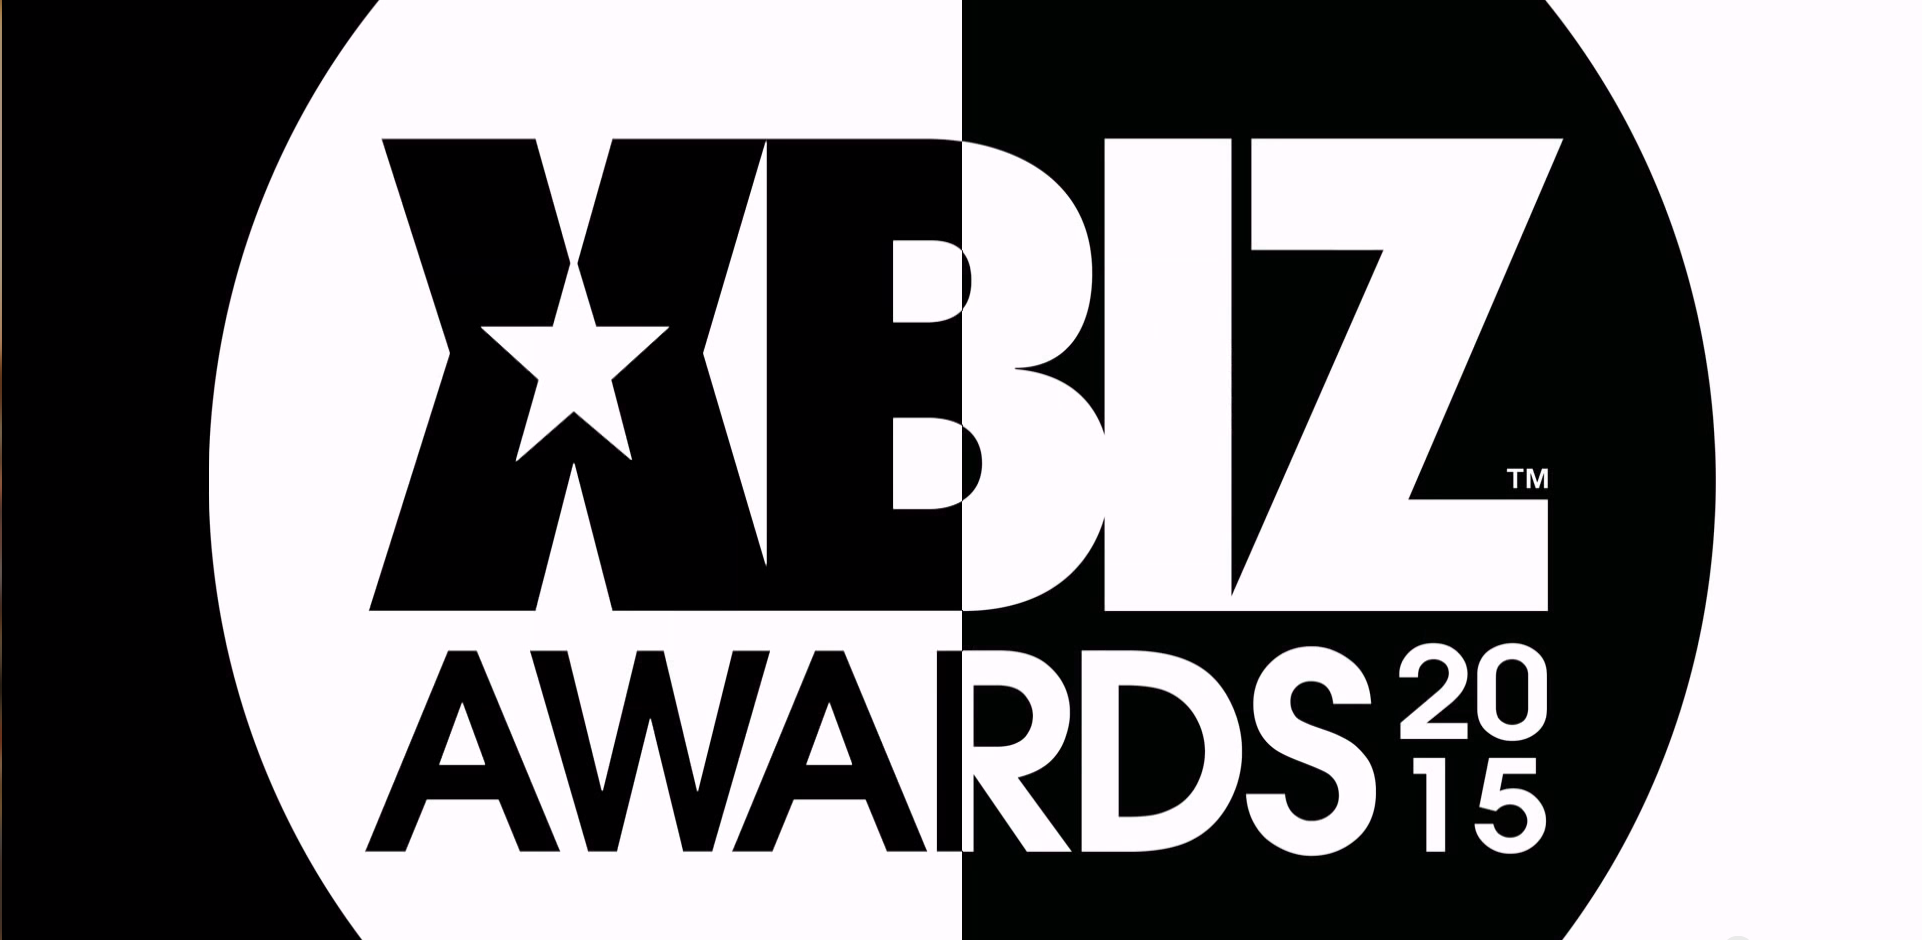 XBIZ Awards: CAM4 Ganhou na Categoria Melhor Site de Webcams ao Vivo do Ano